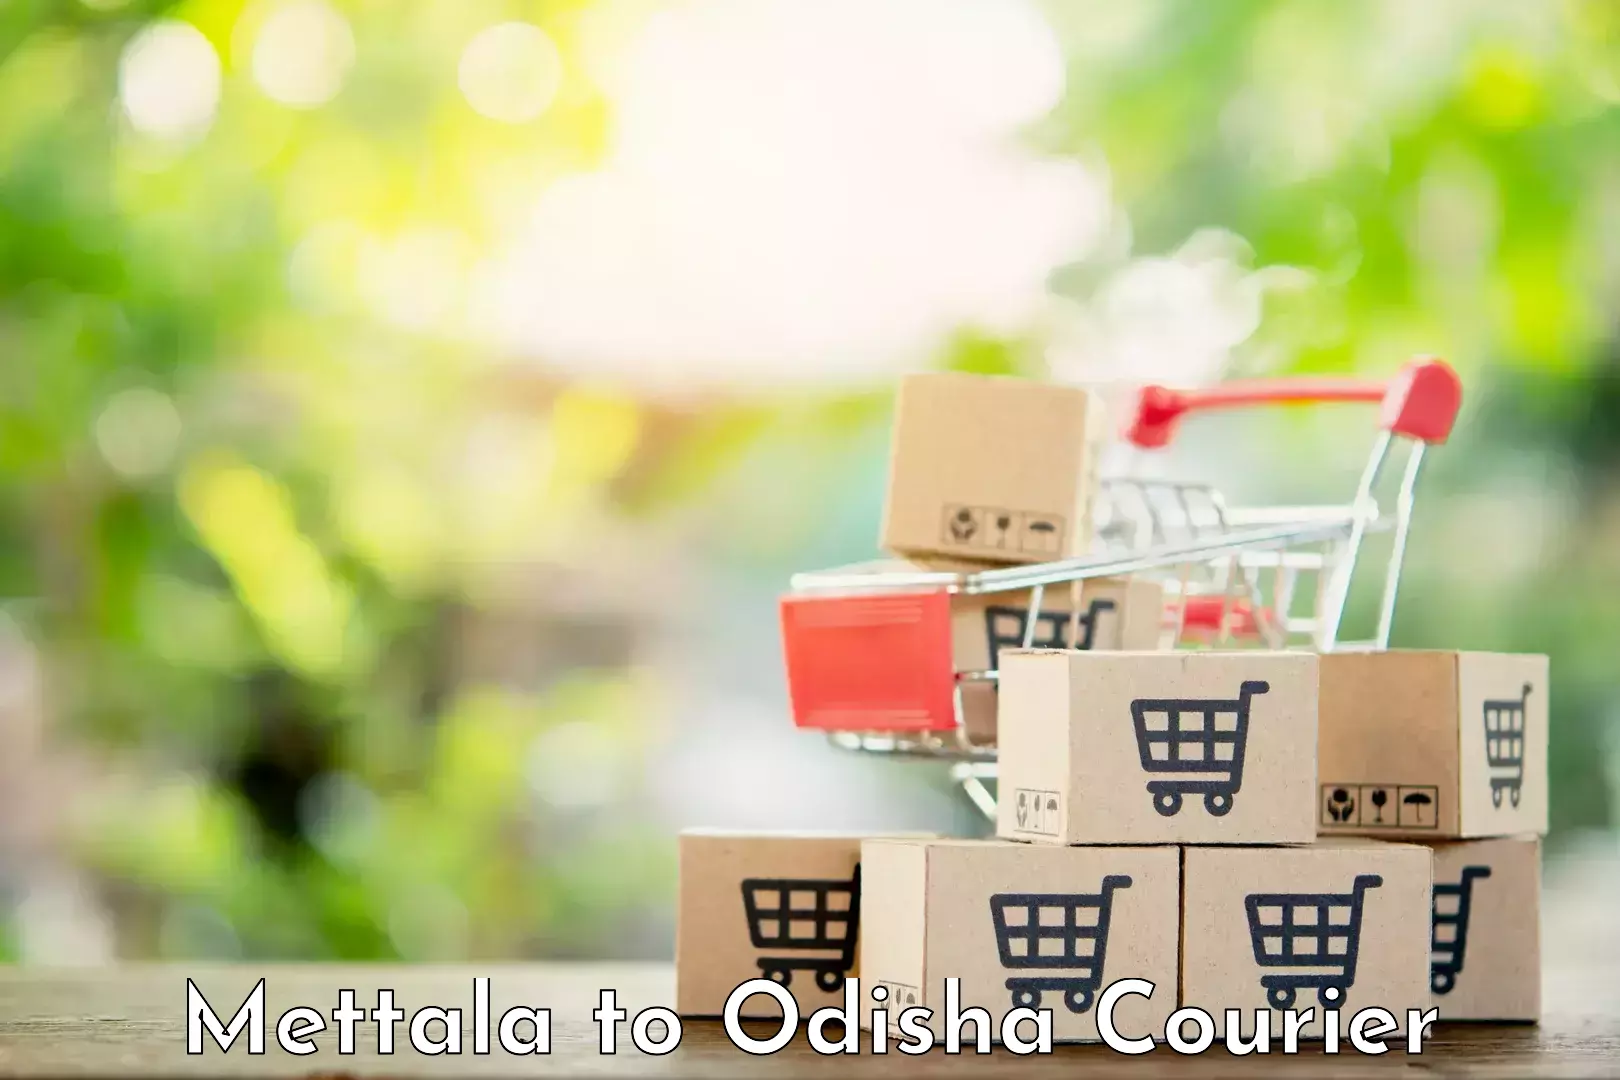 Efficient parcel tracking Mettala to Daspalla